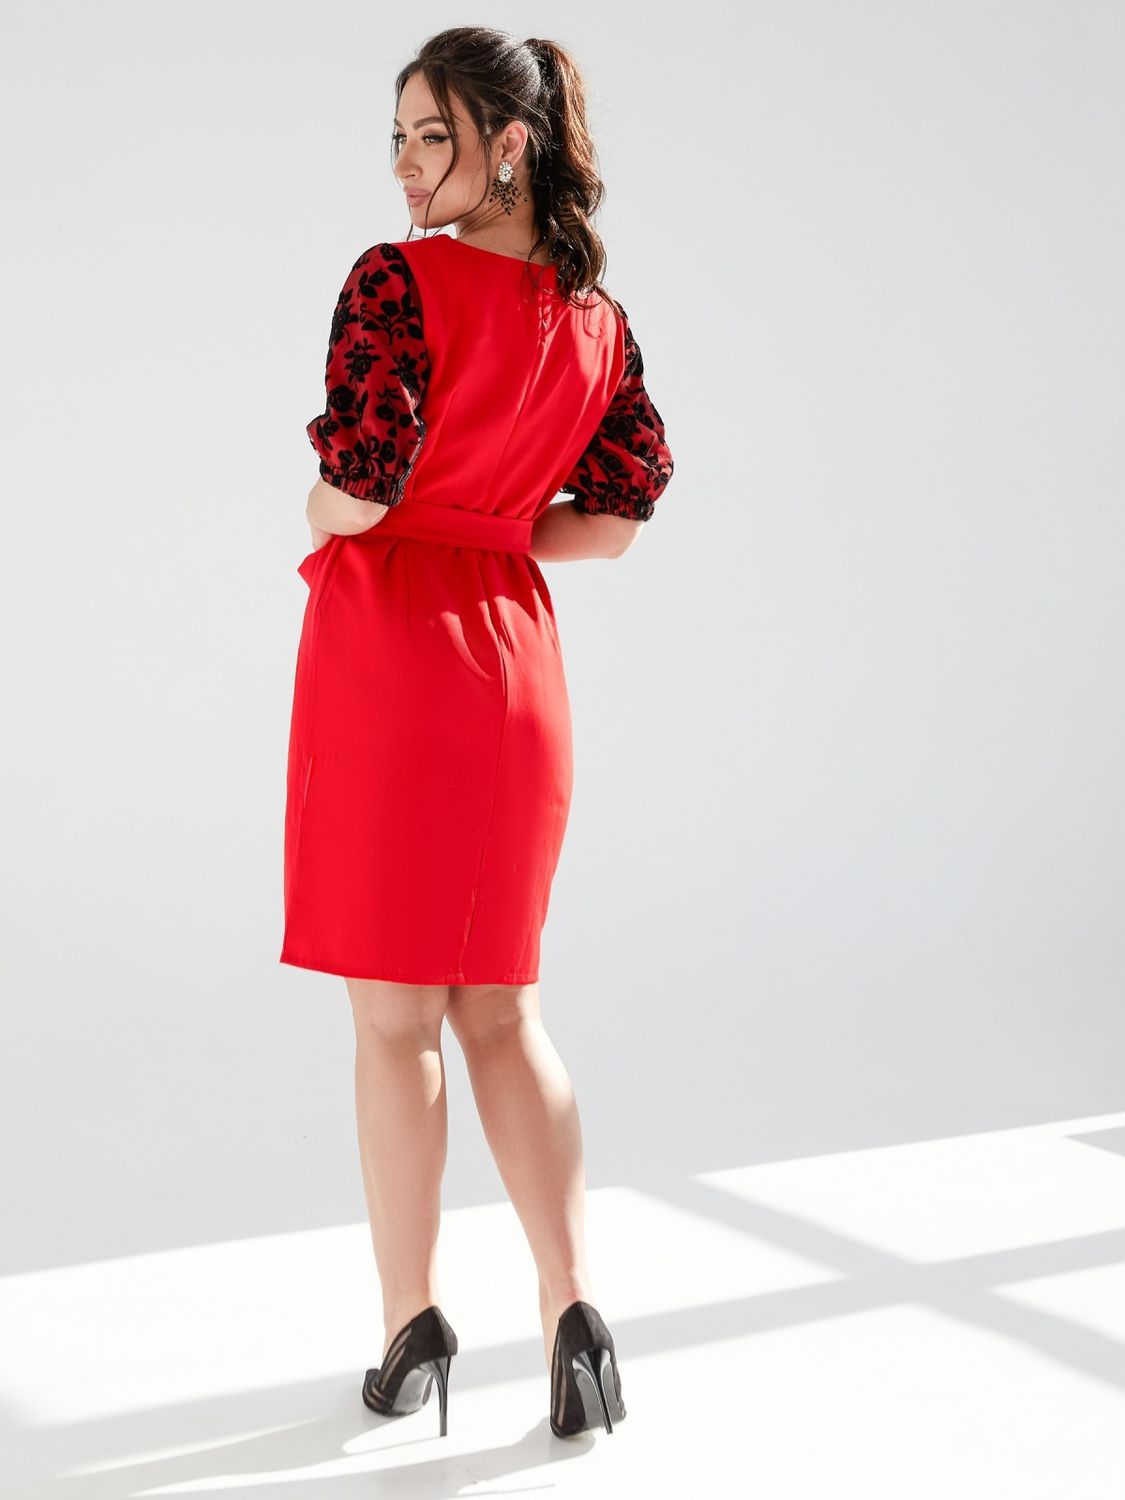 Нарядное платье футляр для полных красное - фото